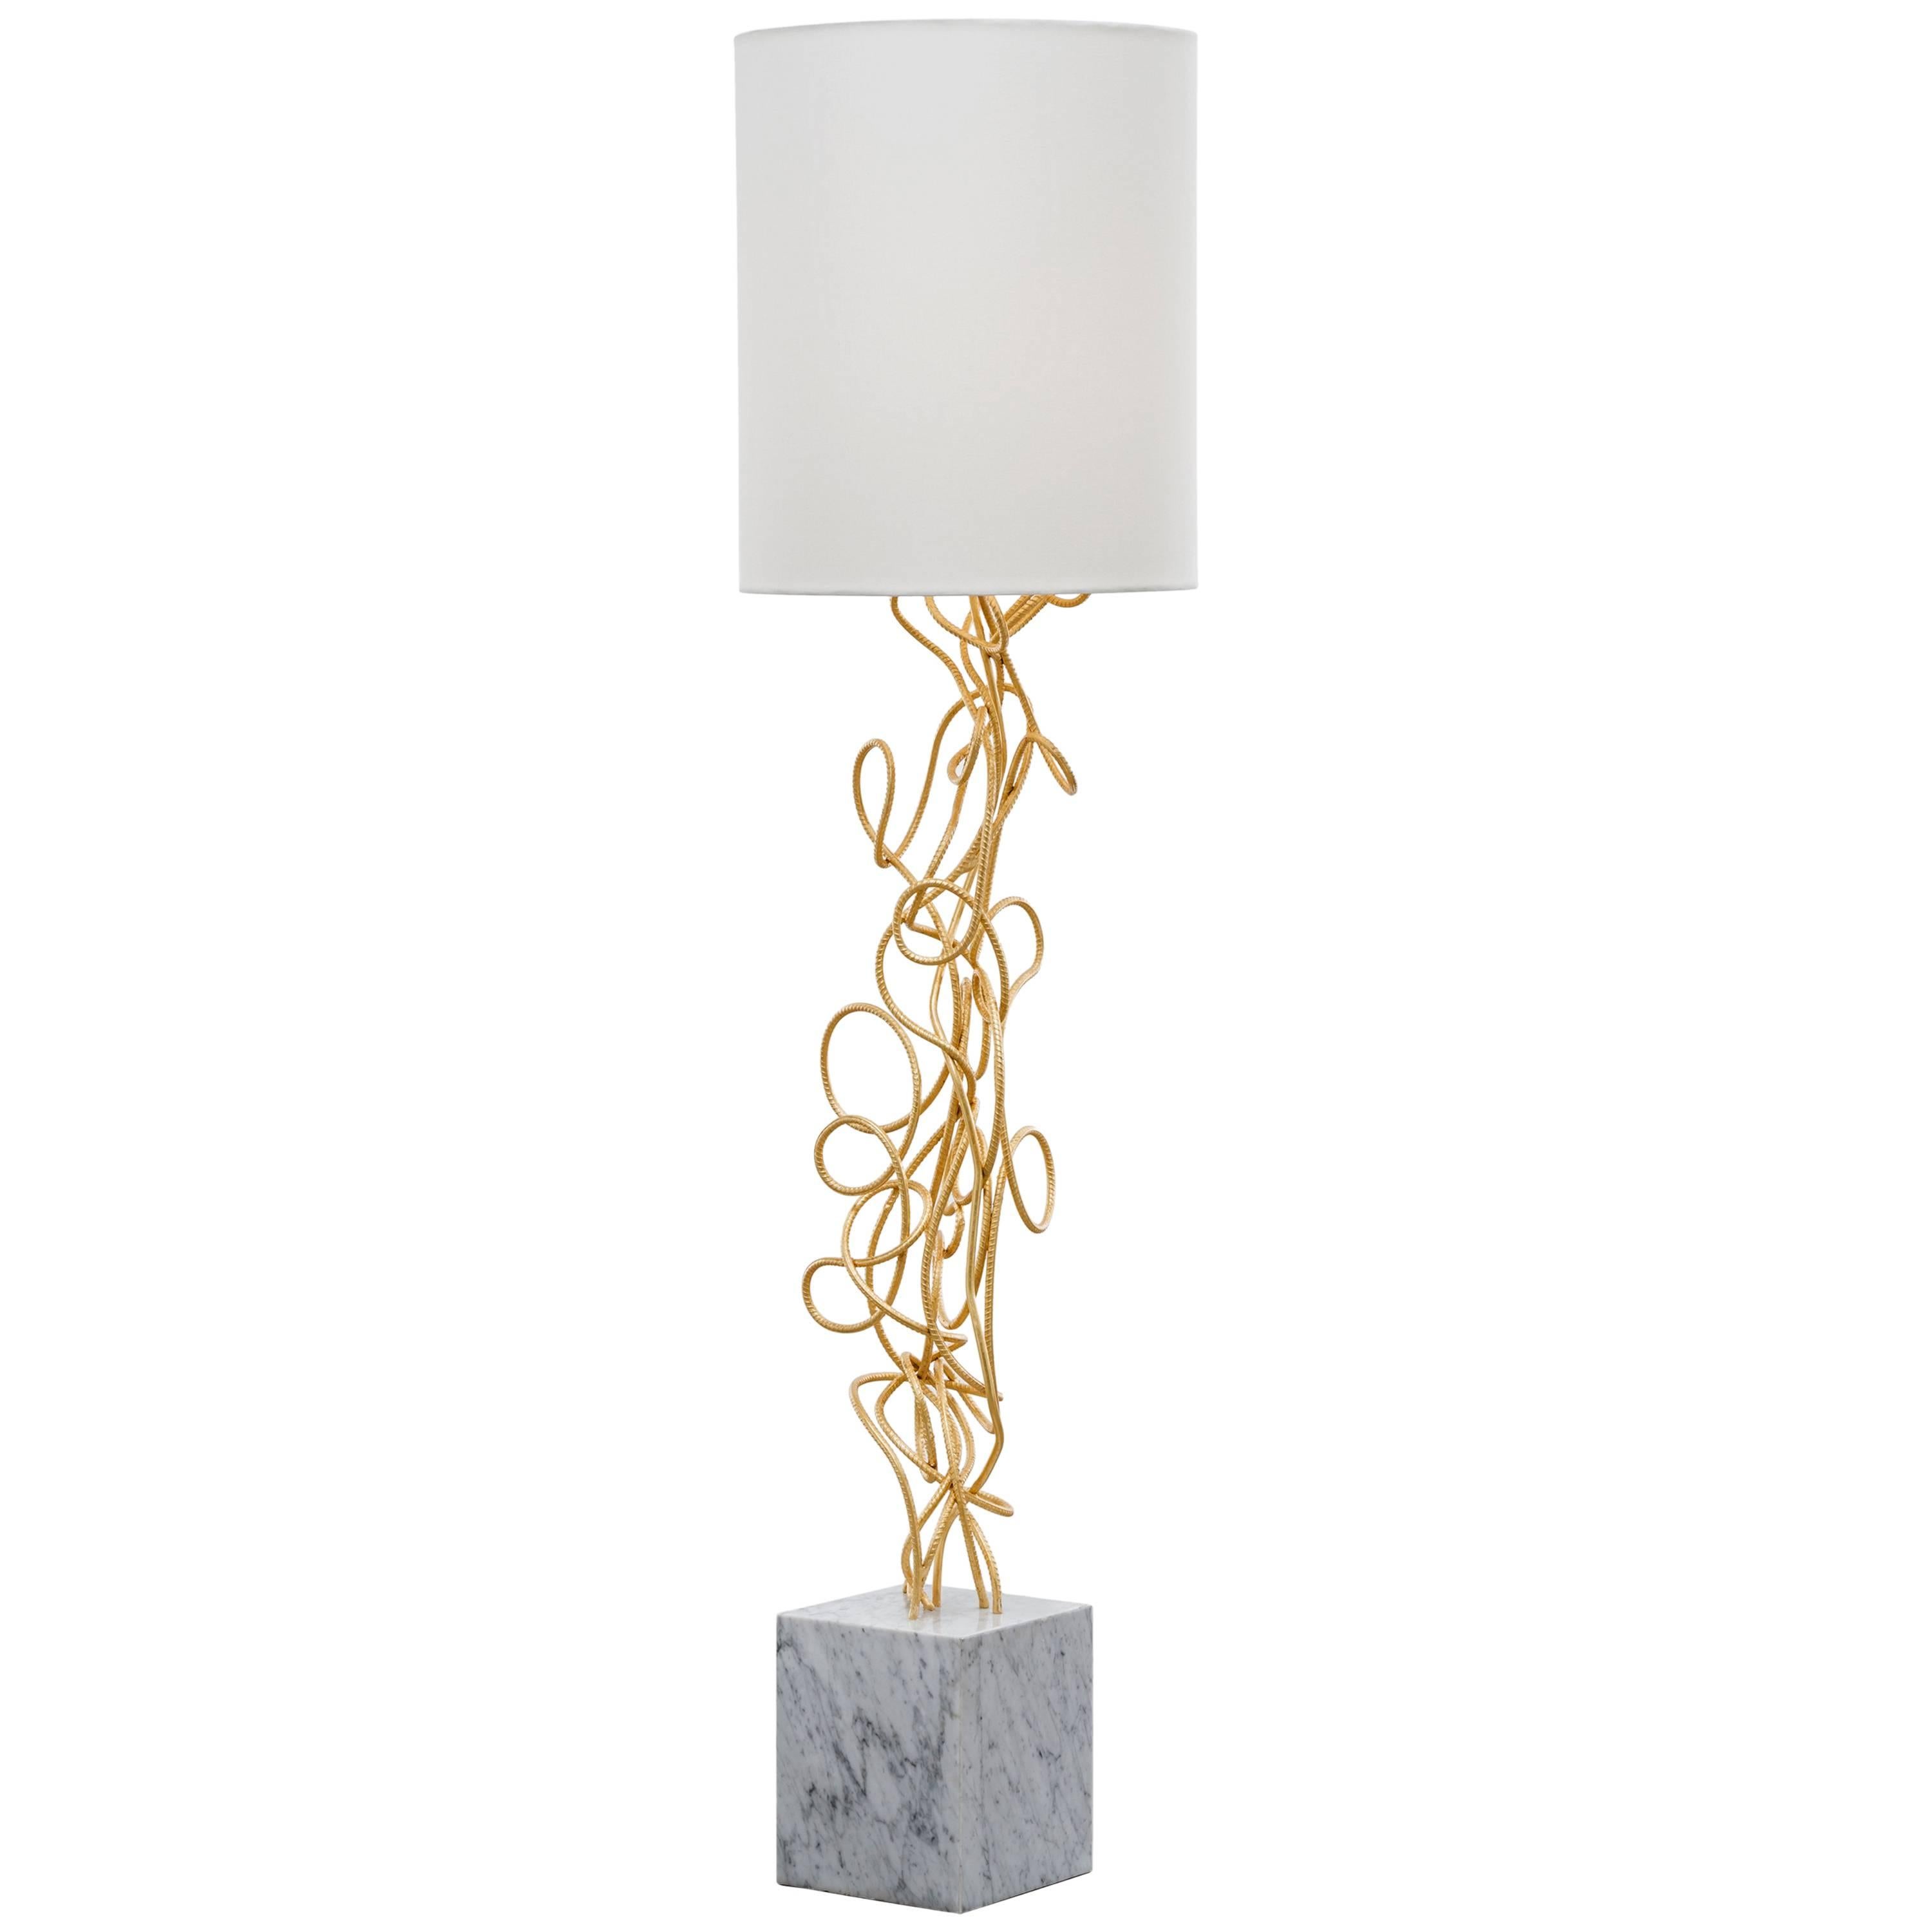 DAX FLOOR LAMP - Lampadaire moderne torsadé à la main en feuille d'or avec base en marbre de Carrare